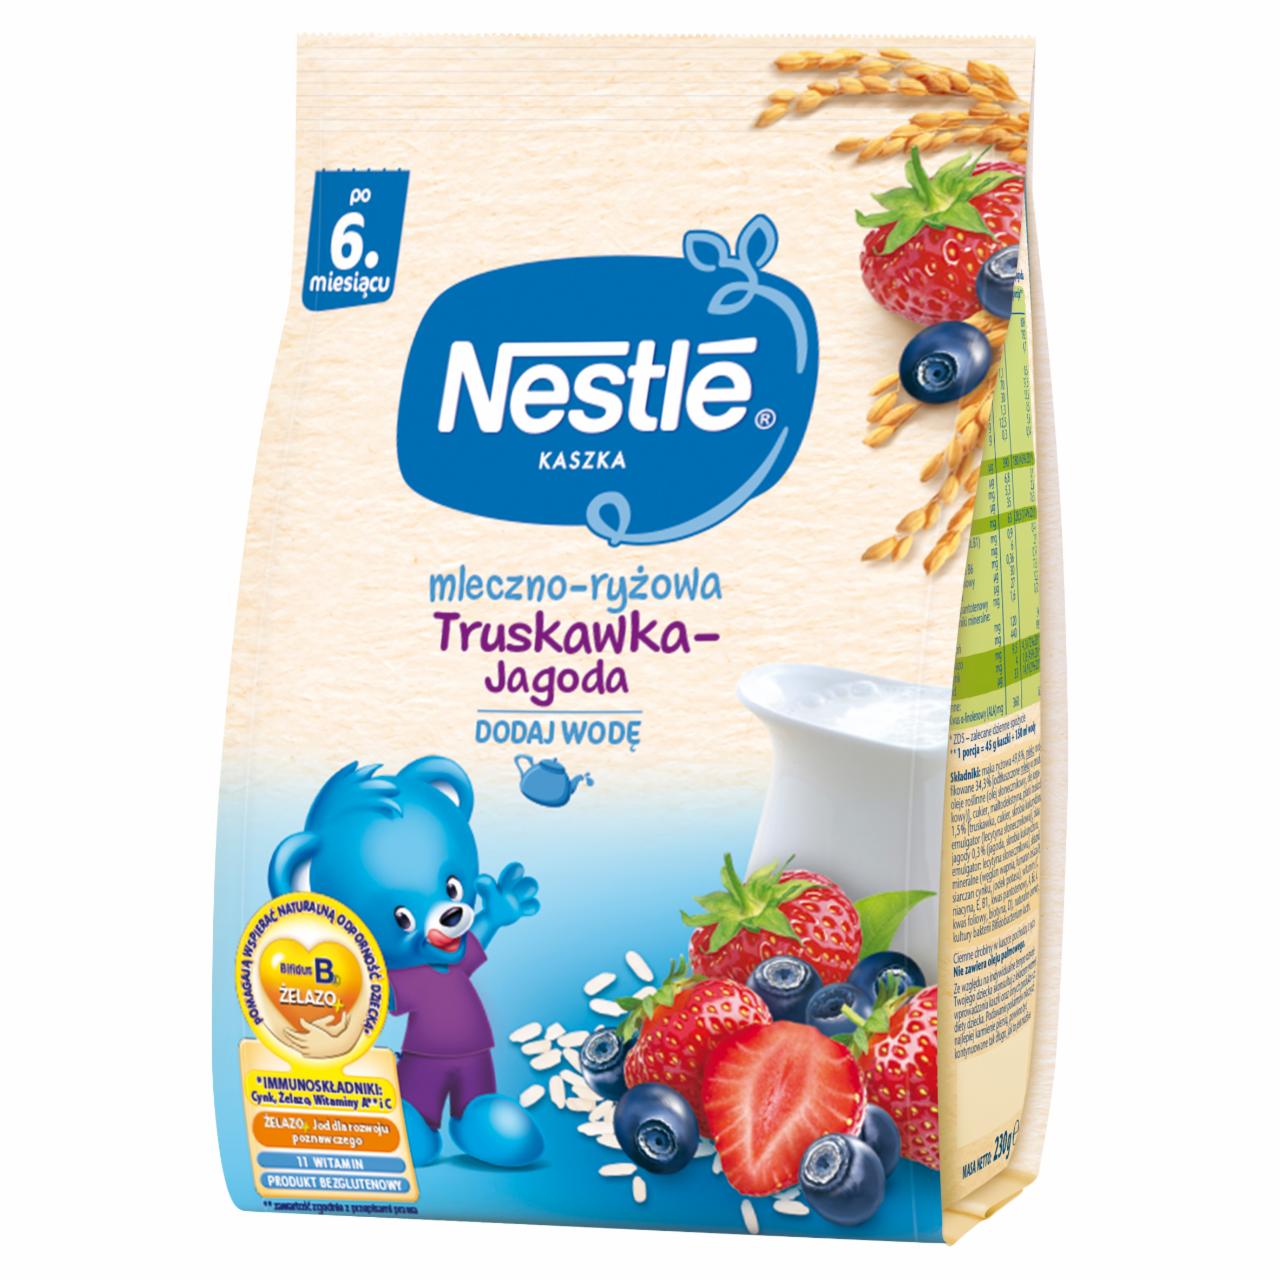 Zdjęcia - Nestlé Kaszka mleczno-ryżowa truskawka-jagoda dla niemowląt po 6. miesiącu 230 g